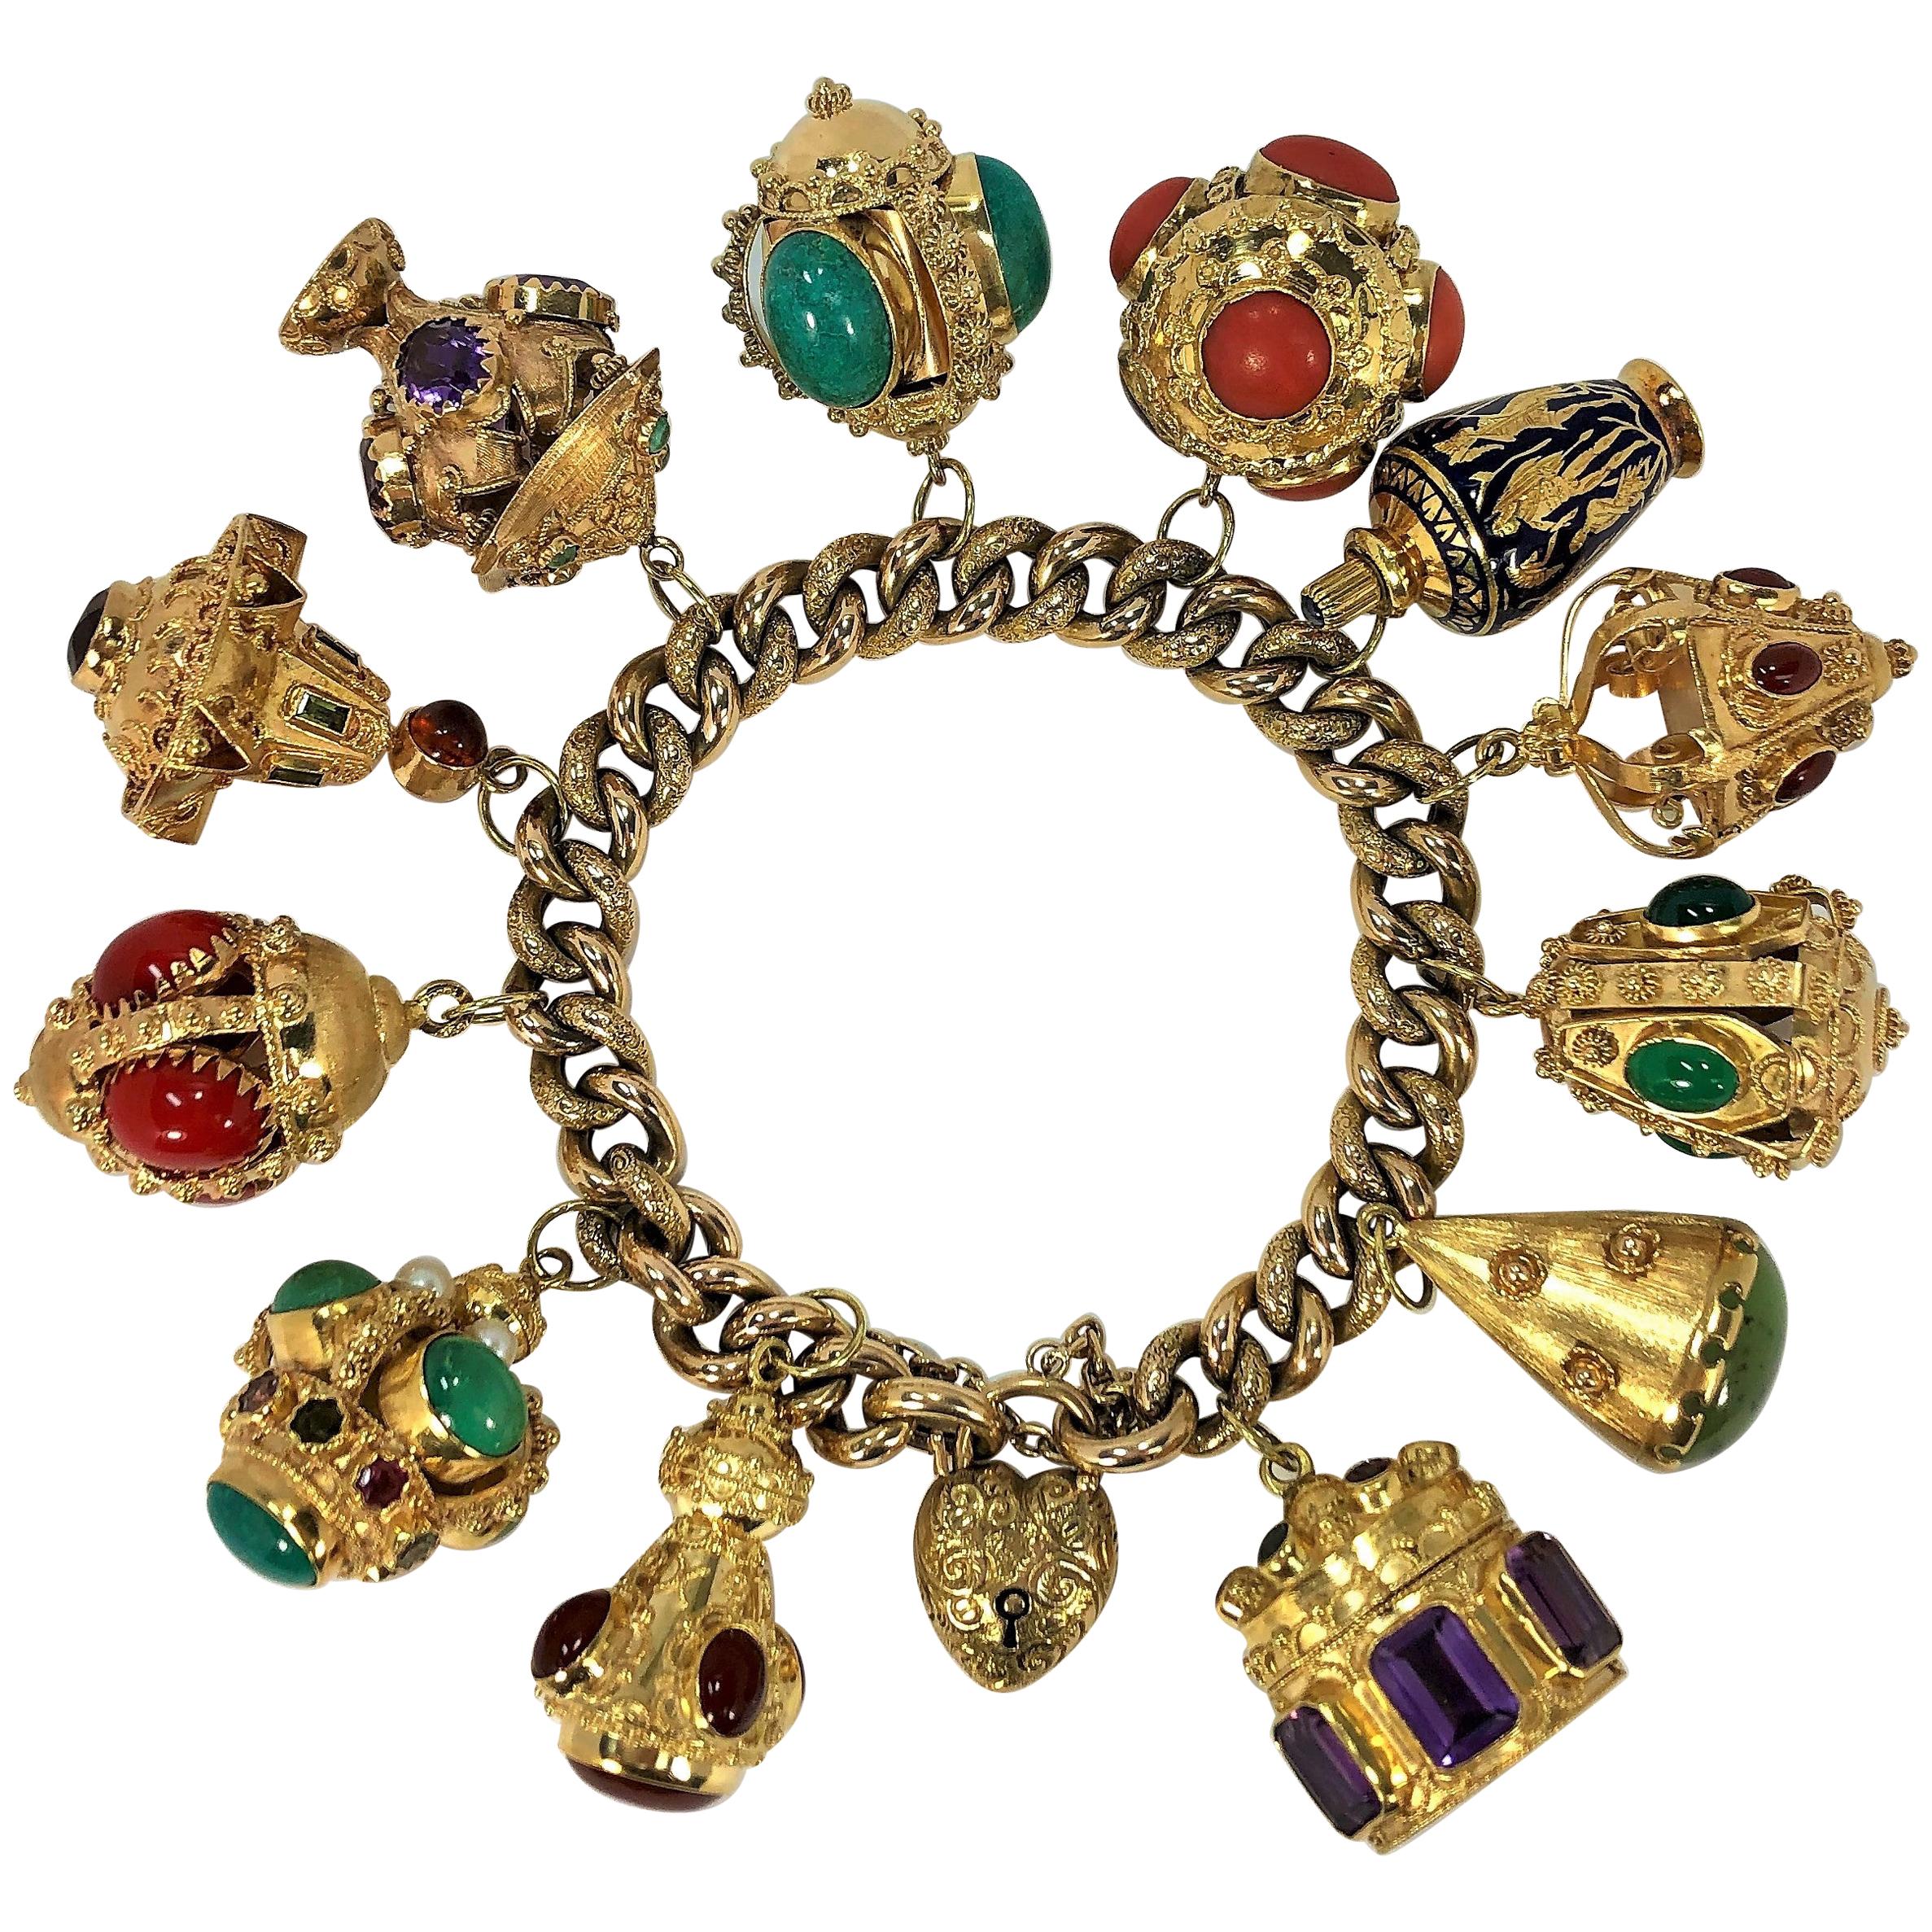 Midcentury Italienisches Gold Etruskisches Revival Charm-Armband-12 verschiedene Farbe Charms